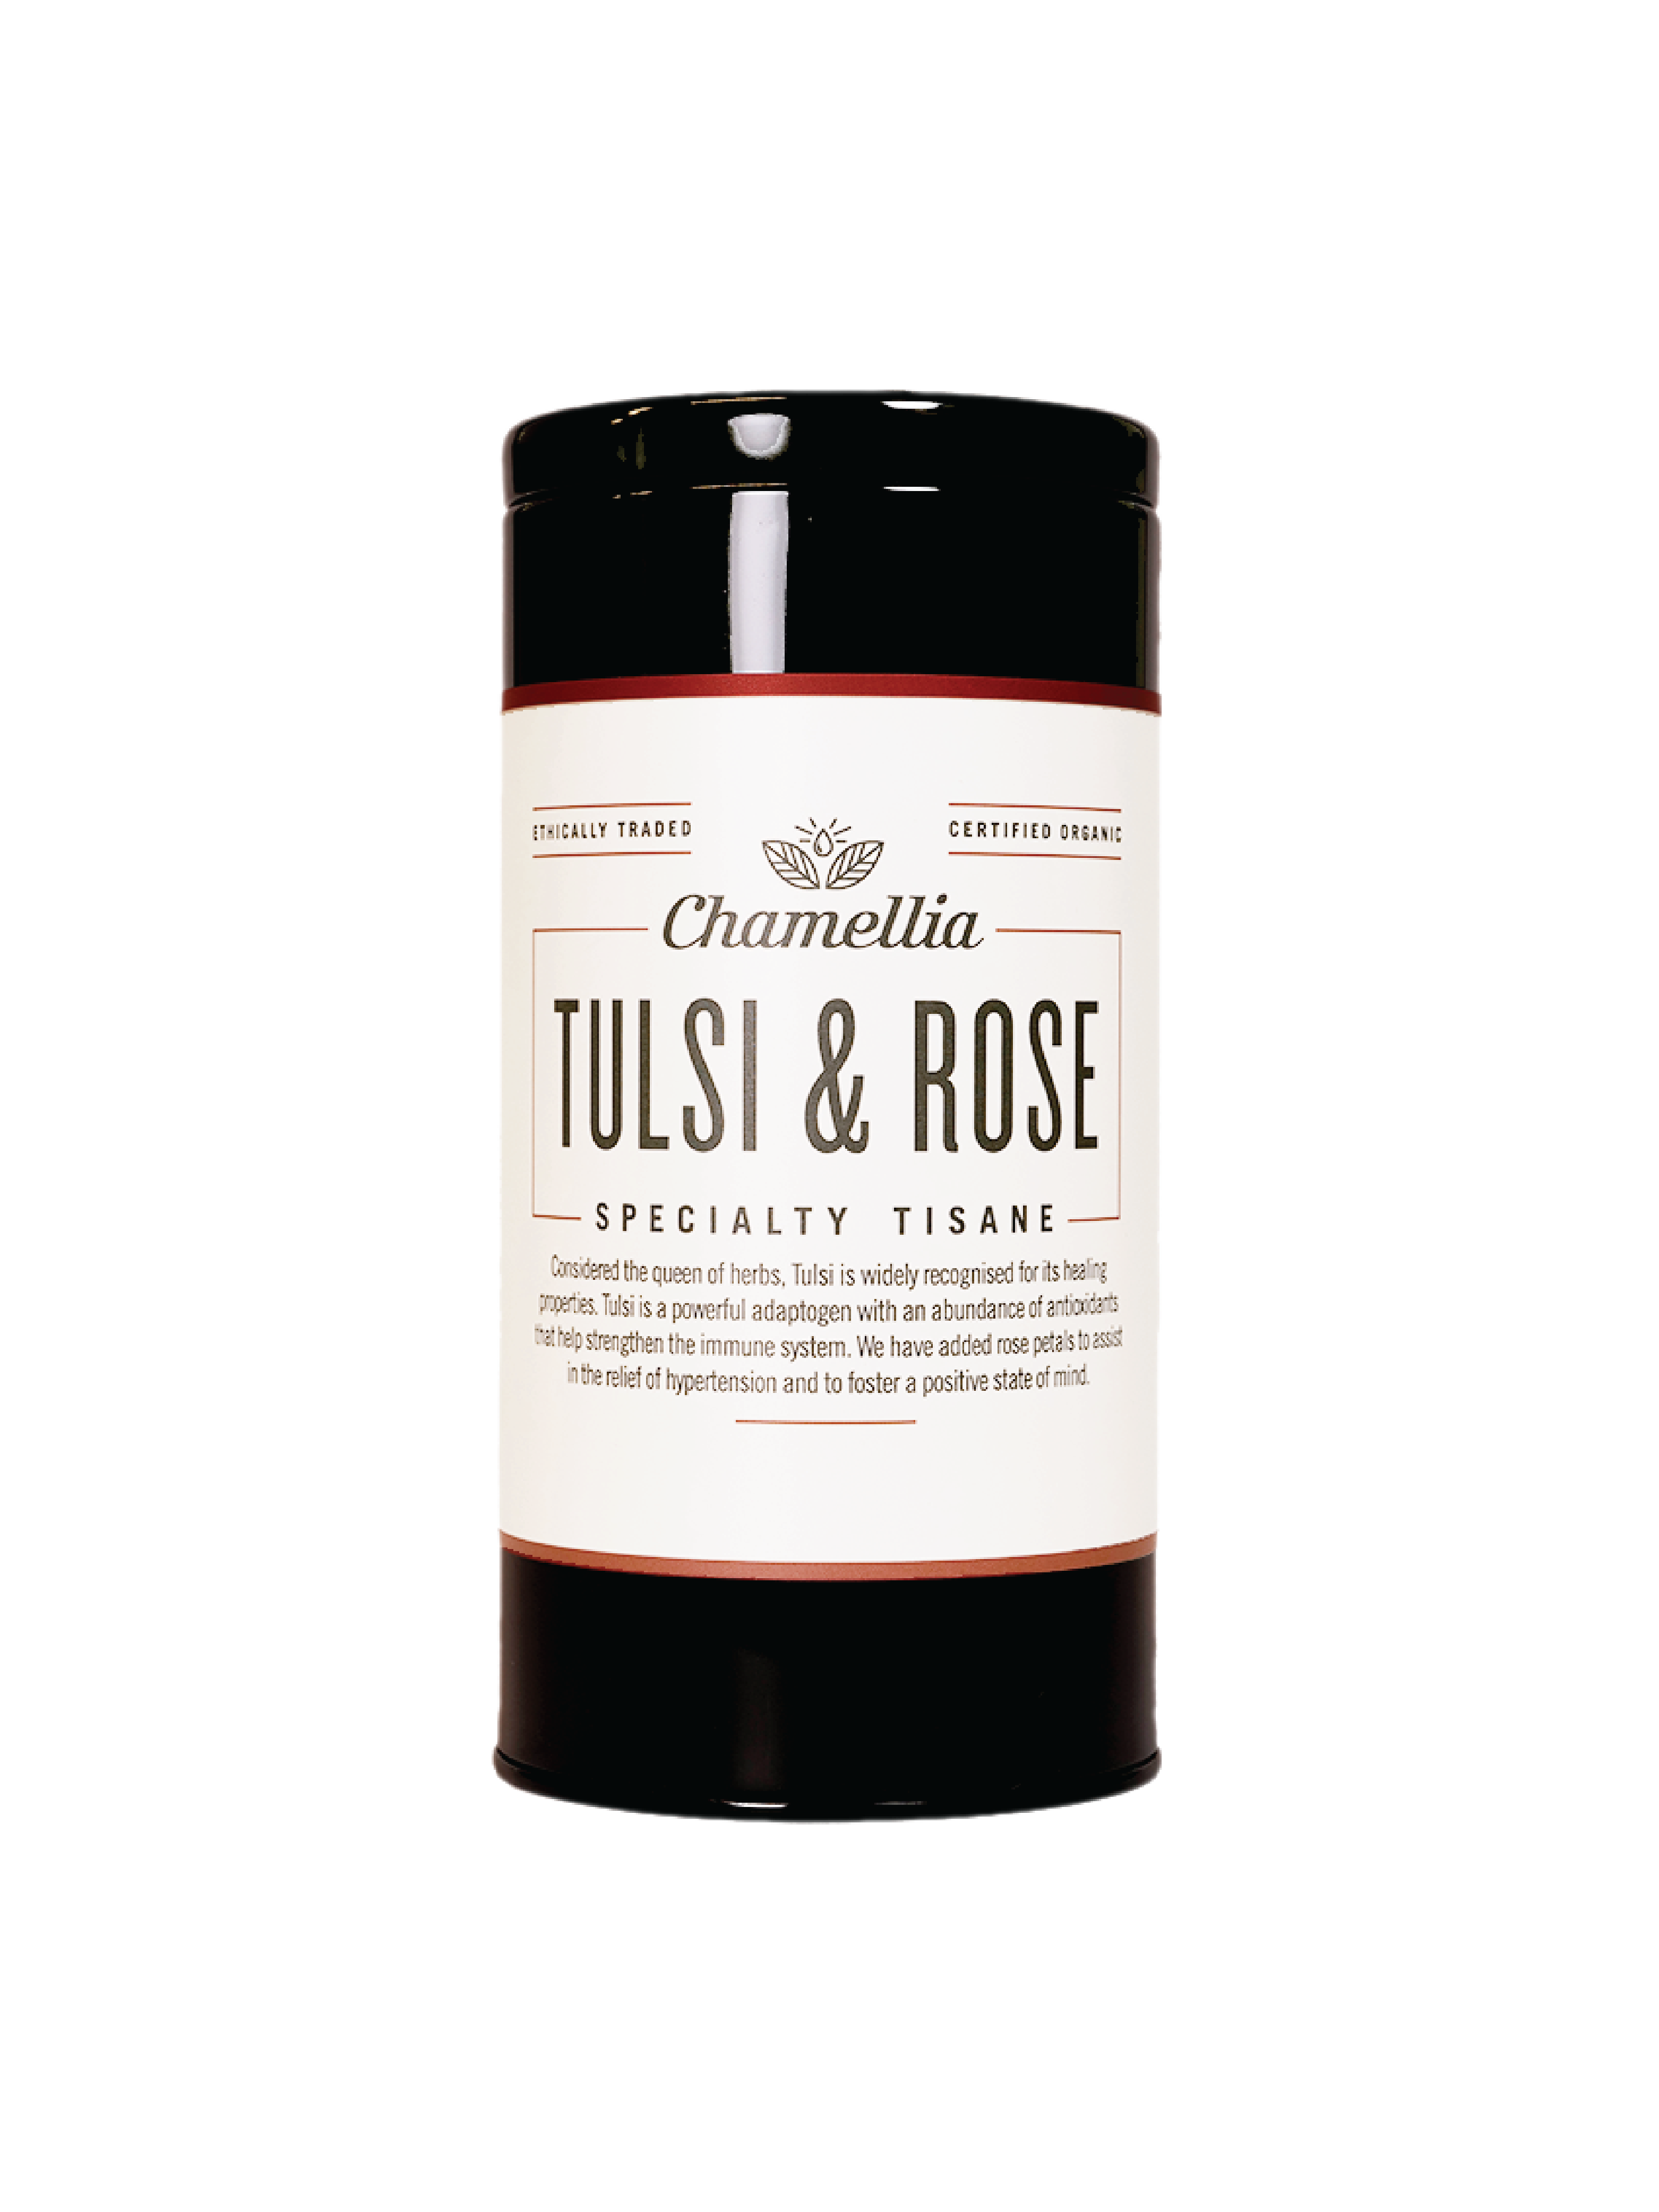 Tulsi & Rose Tea Tin